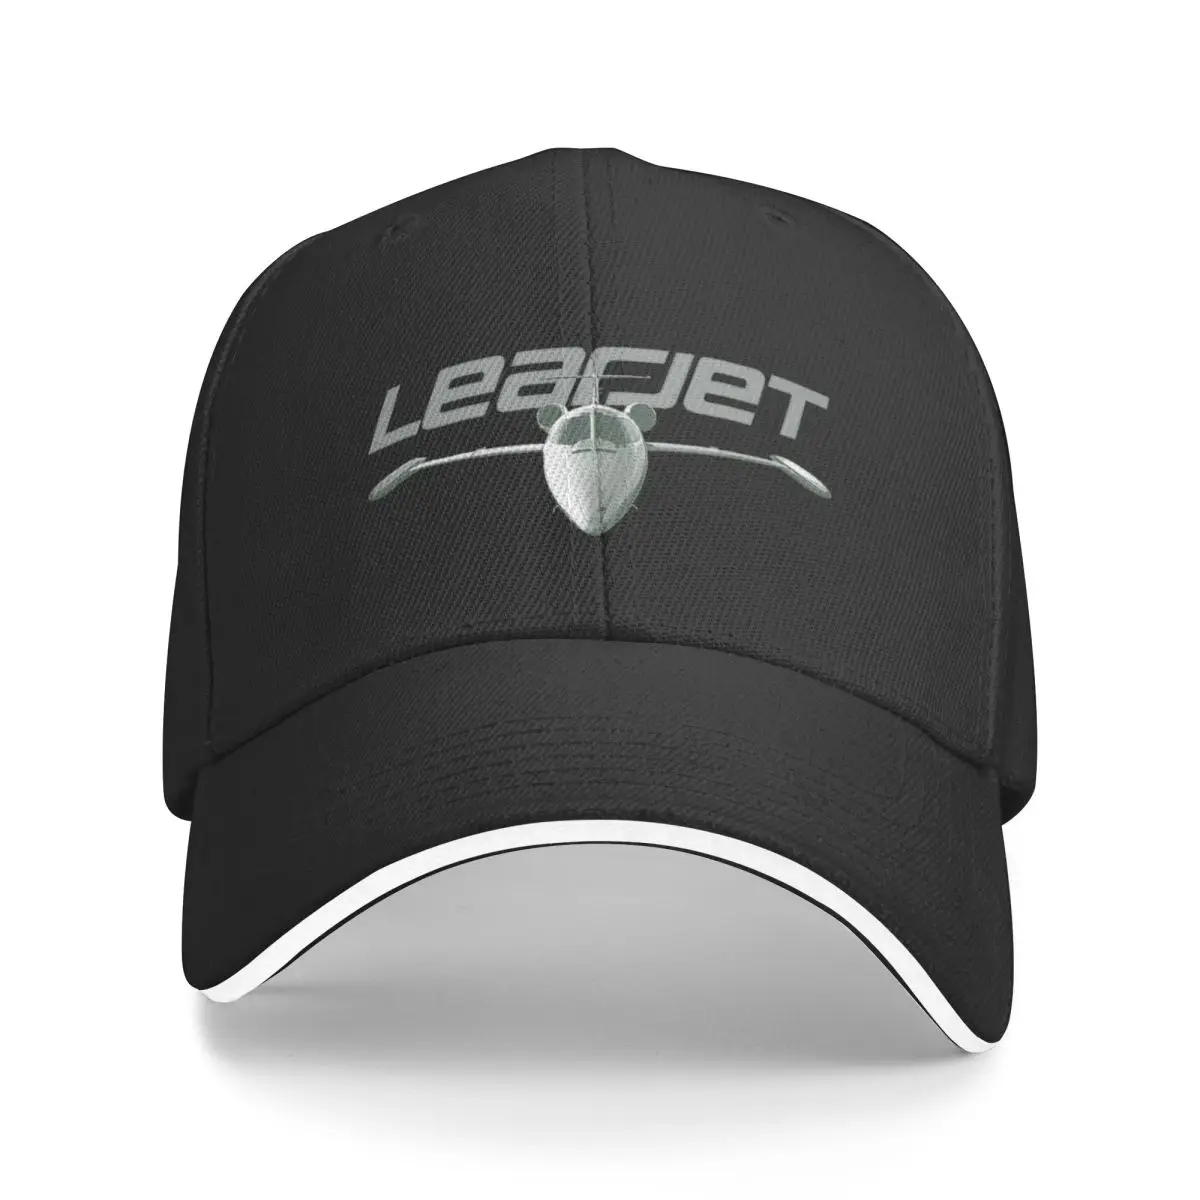 Новая бейсболка Learjet спереди, спортивные кепки, пушистая шапка, кепки для походов, женская одежда для гольфа, мужская